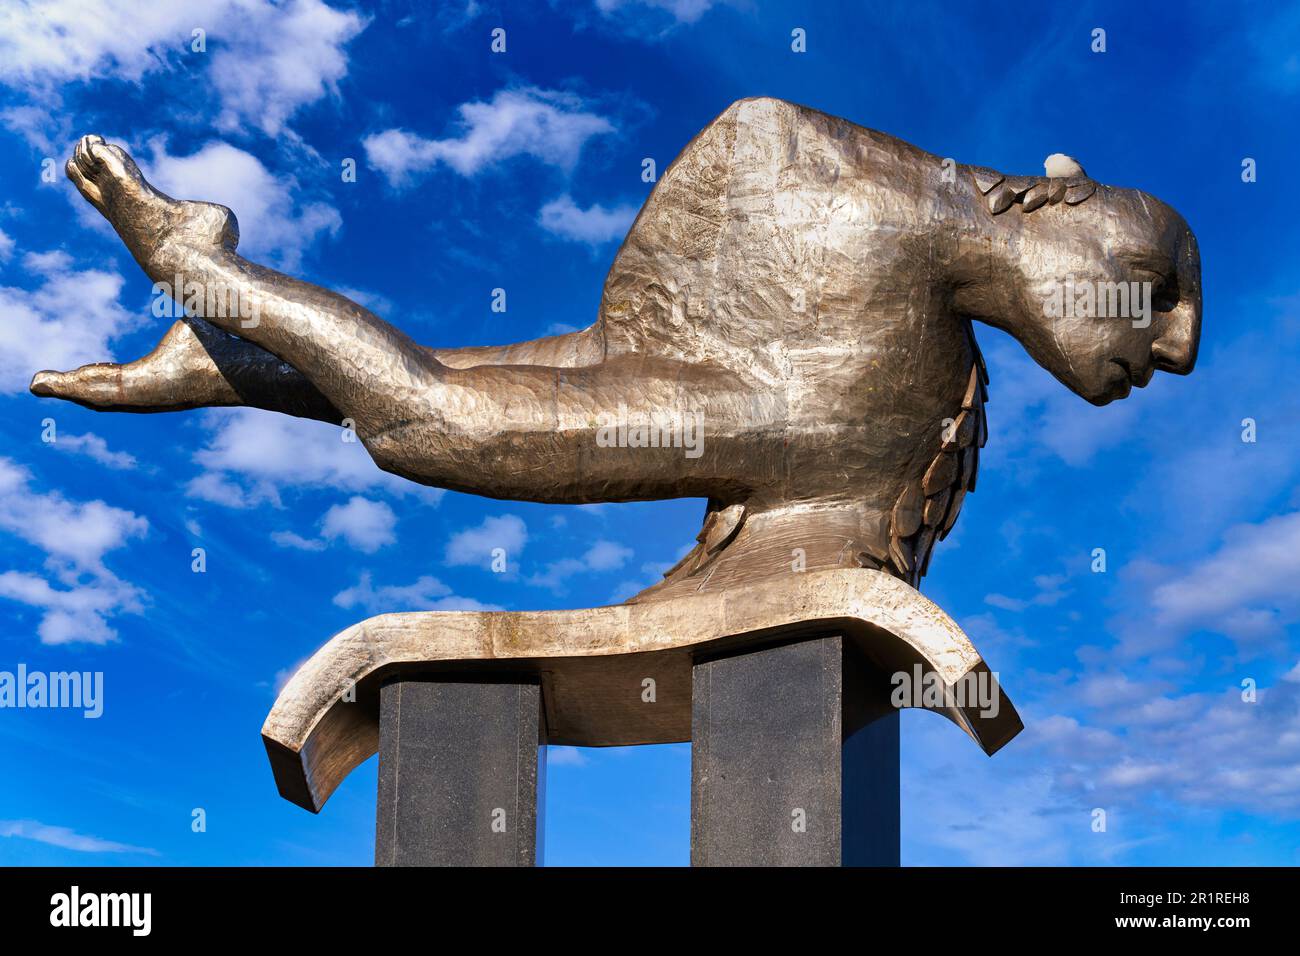 O Sireno, le Sireno, le poisson en acier inoxydable de l'homme, la sculpture de Leiro Francisco, Puerta del sol, Vigo, Pontevedra, Galice, Espagne. La sculpture de Sireno, Banque D'Images